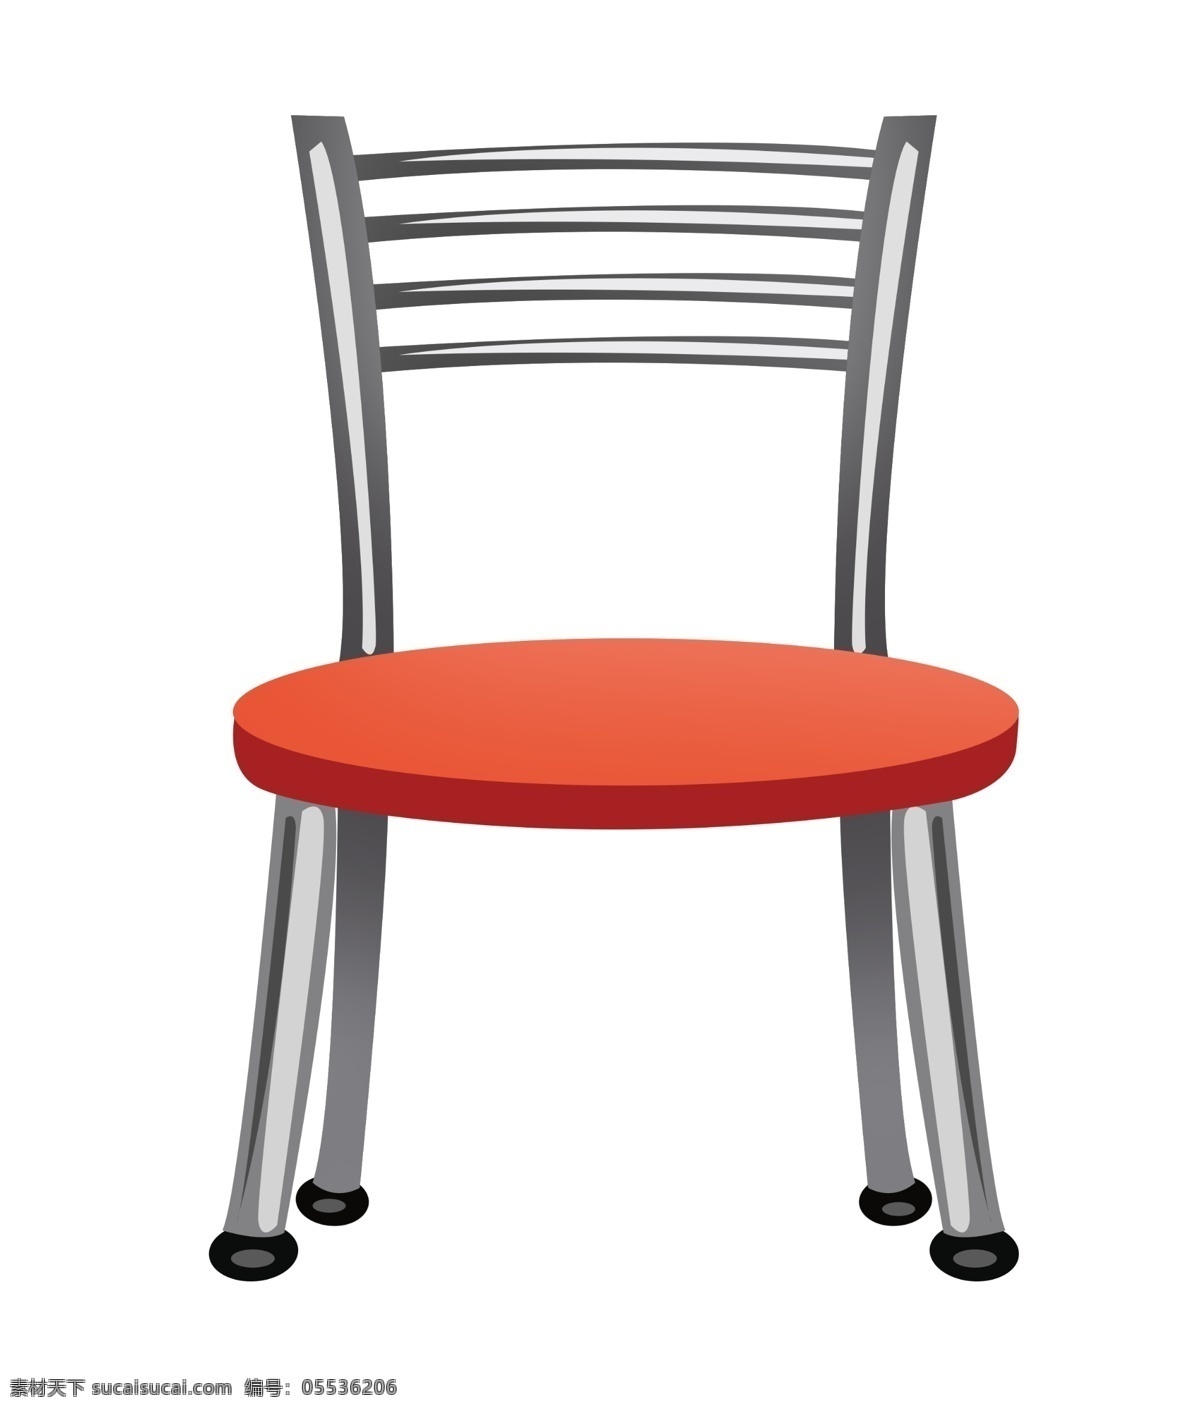 红色 椅子 装饰 插画 红色的椅子 不锈钢椅子 漂亮的椅子 创意椅子 立体椅子 精美椅子 卡通椅子